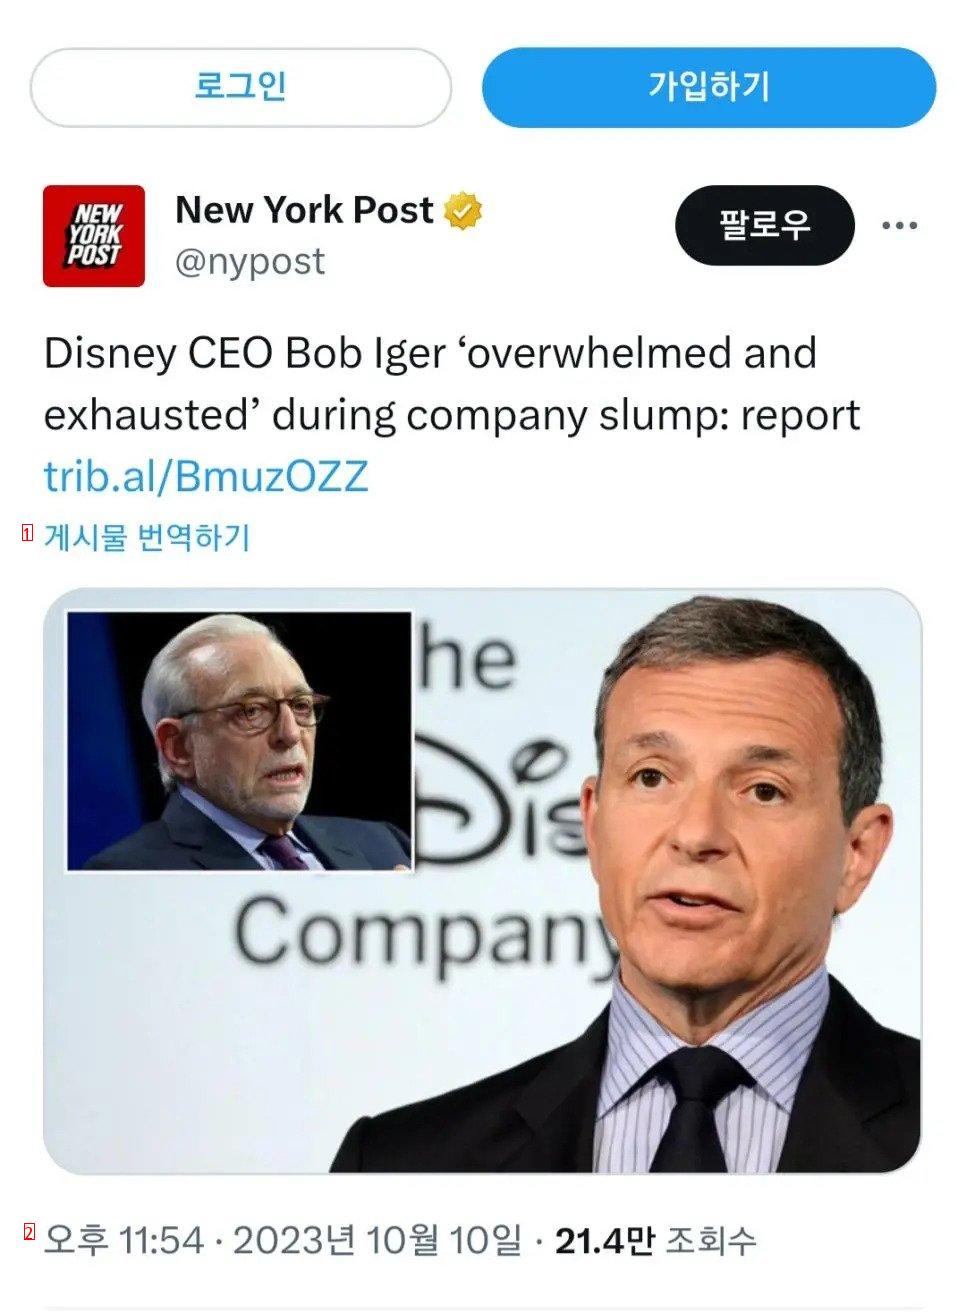 영화들이 줄줄이 망해서 충격먹고 좌절했다는 디즈니 CEO